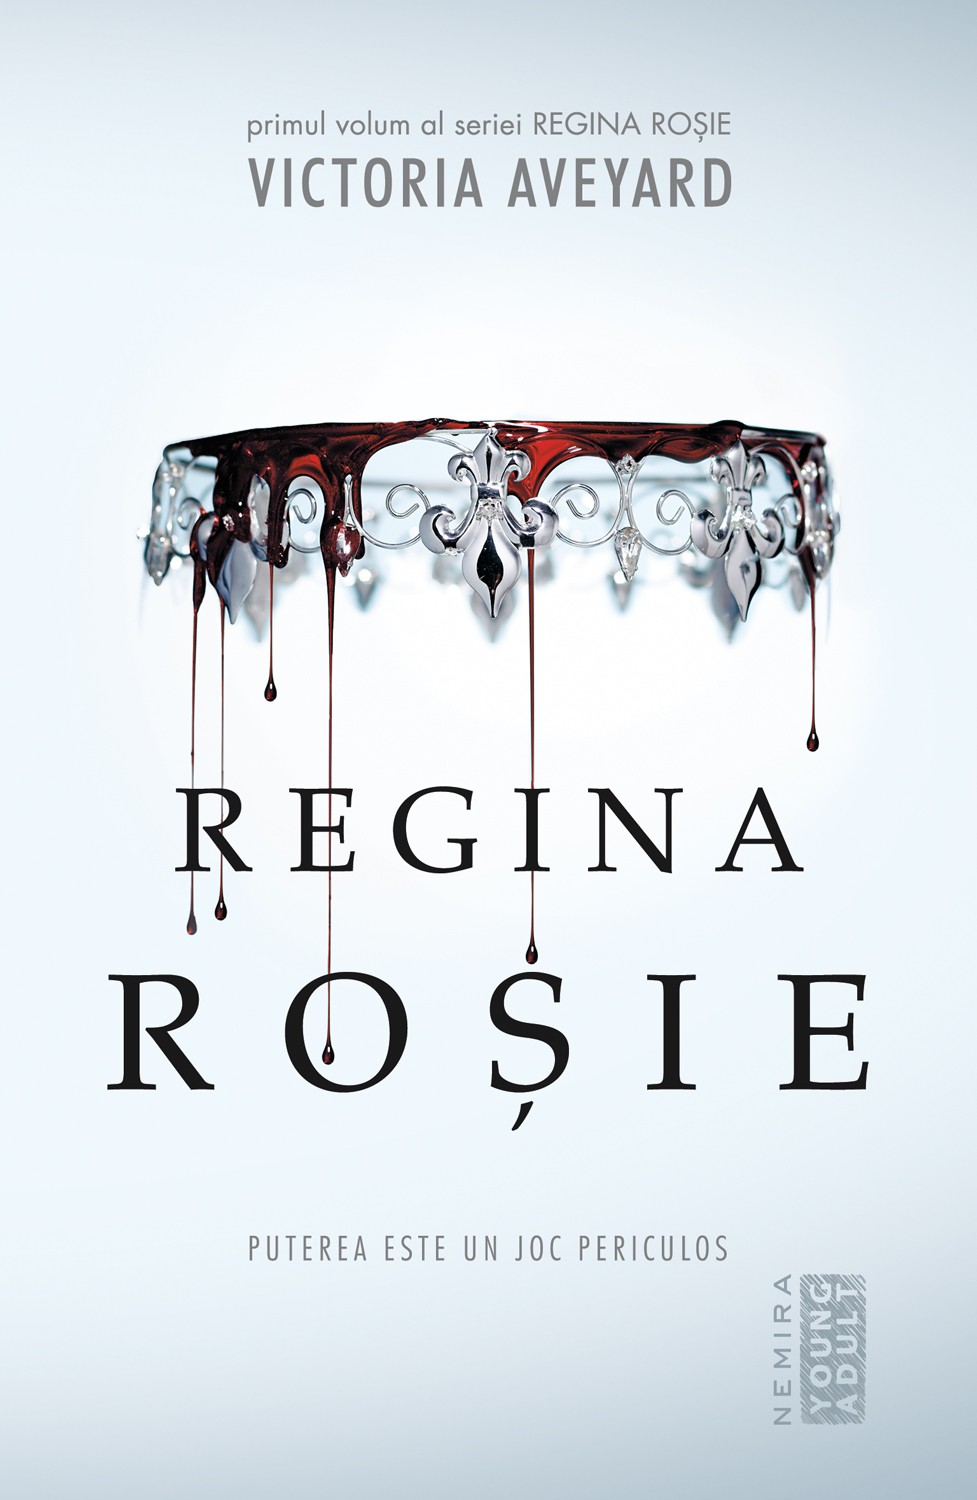 Regina rosie